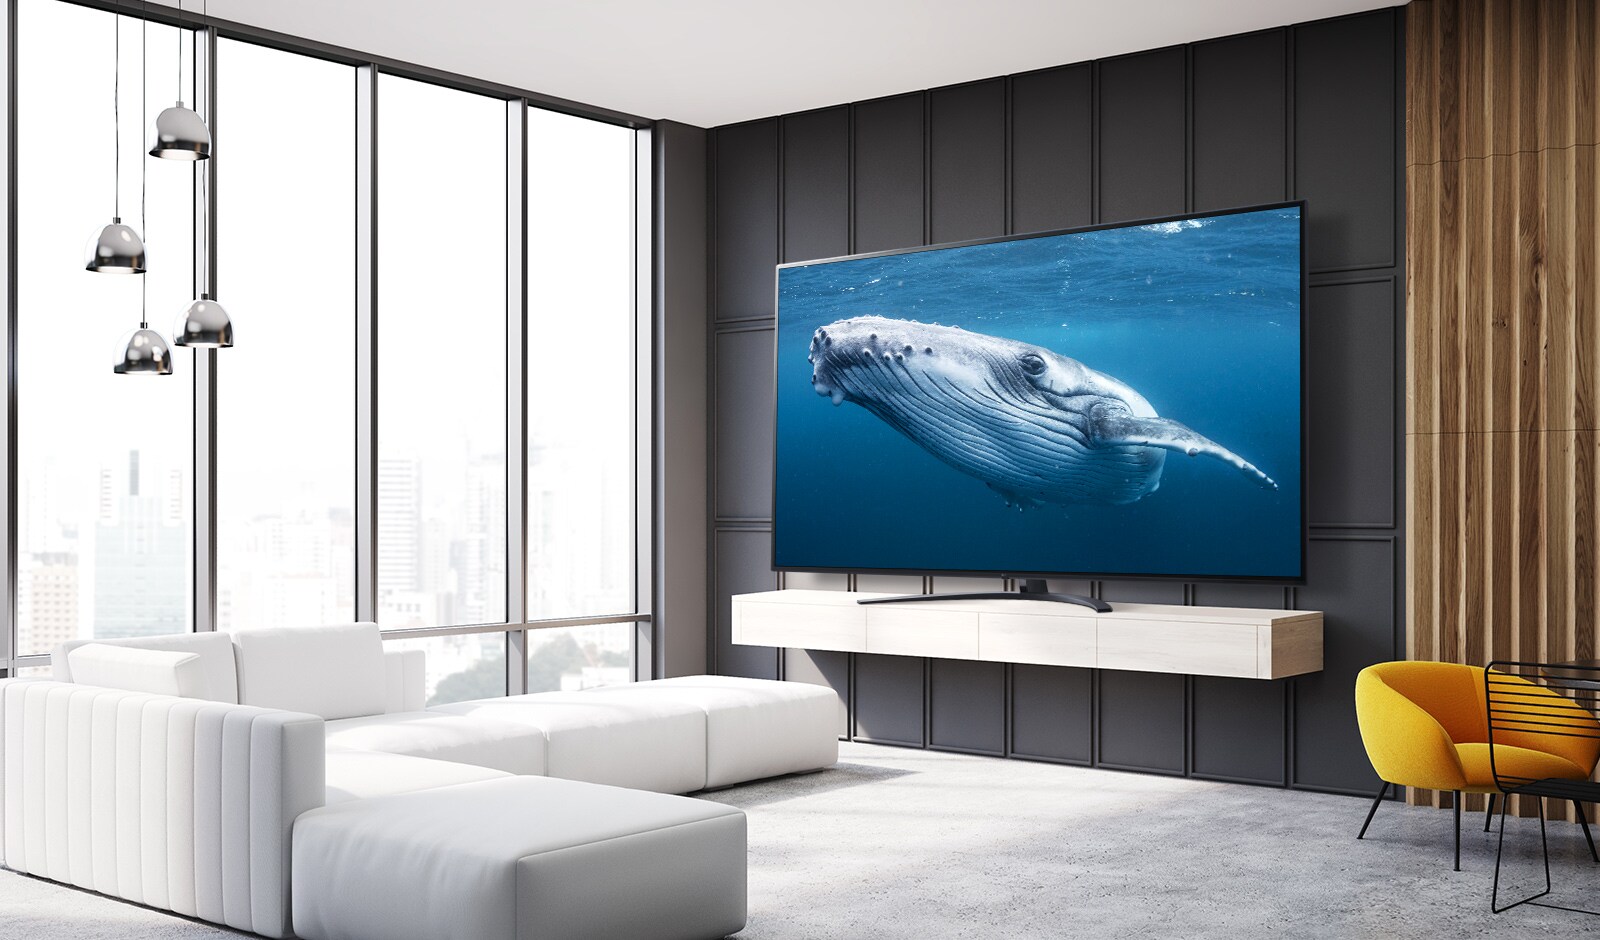 בתוך סלון, יש מסך טלוויזיה גדול המציג תמונה של לווייתן גדול בים.